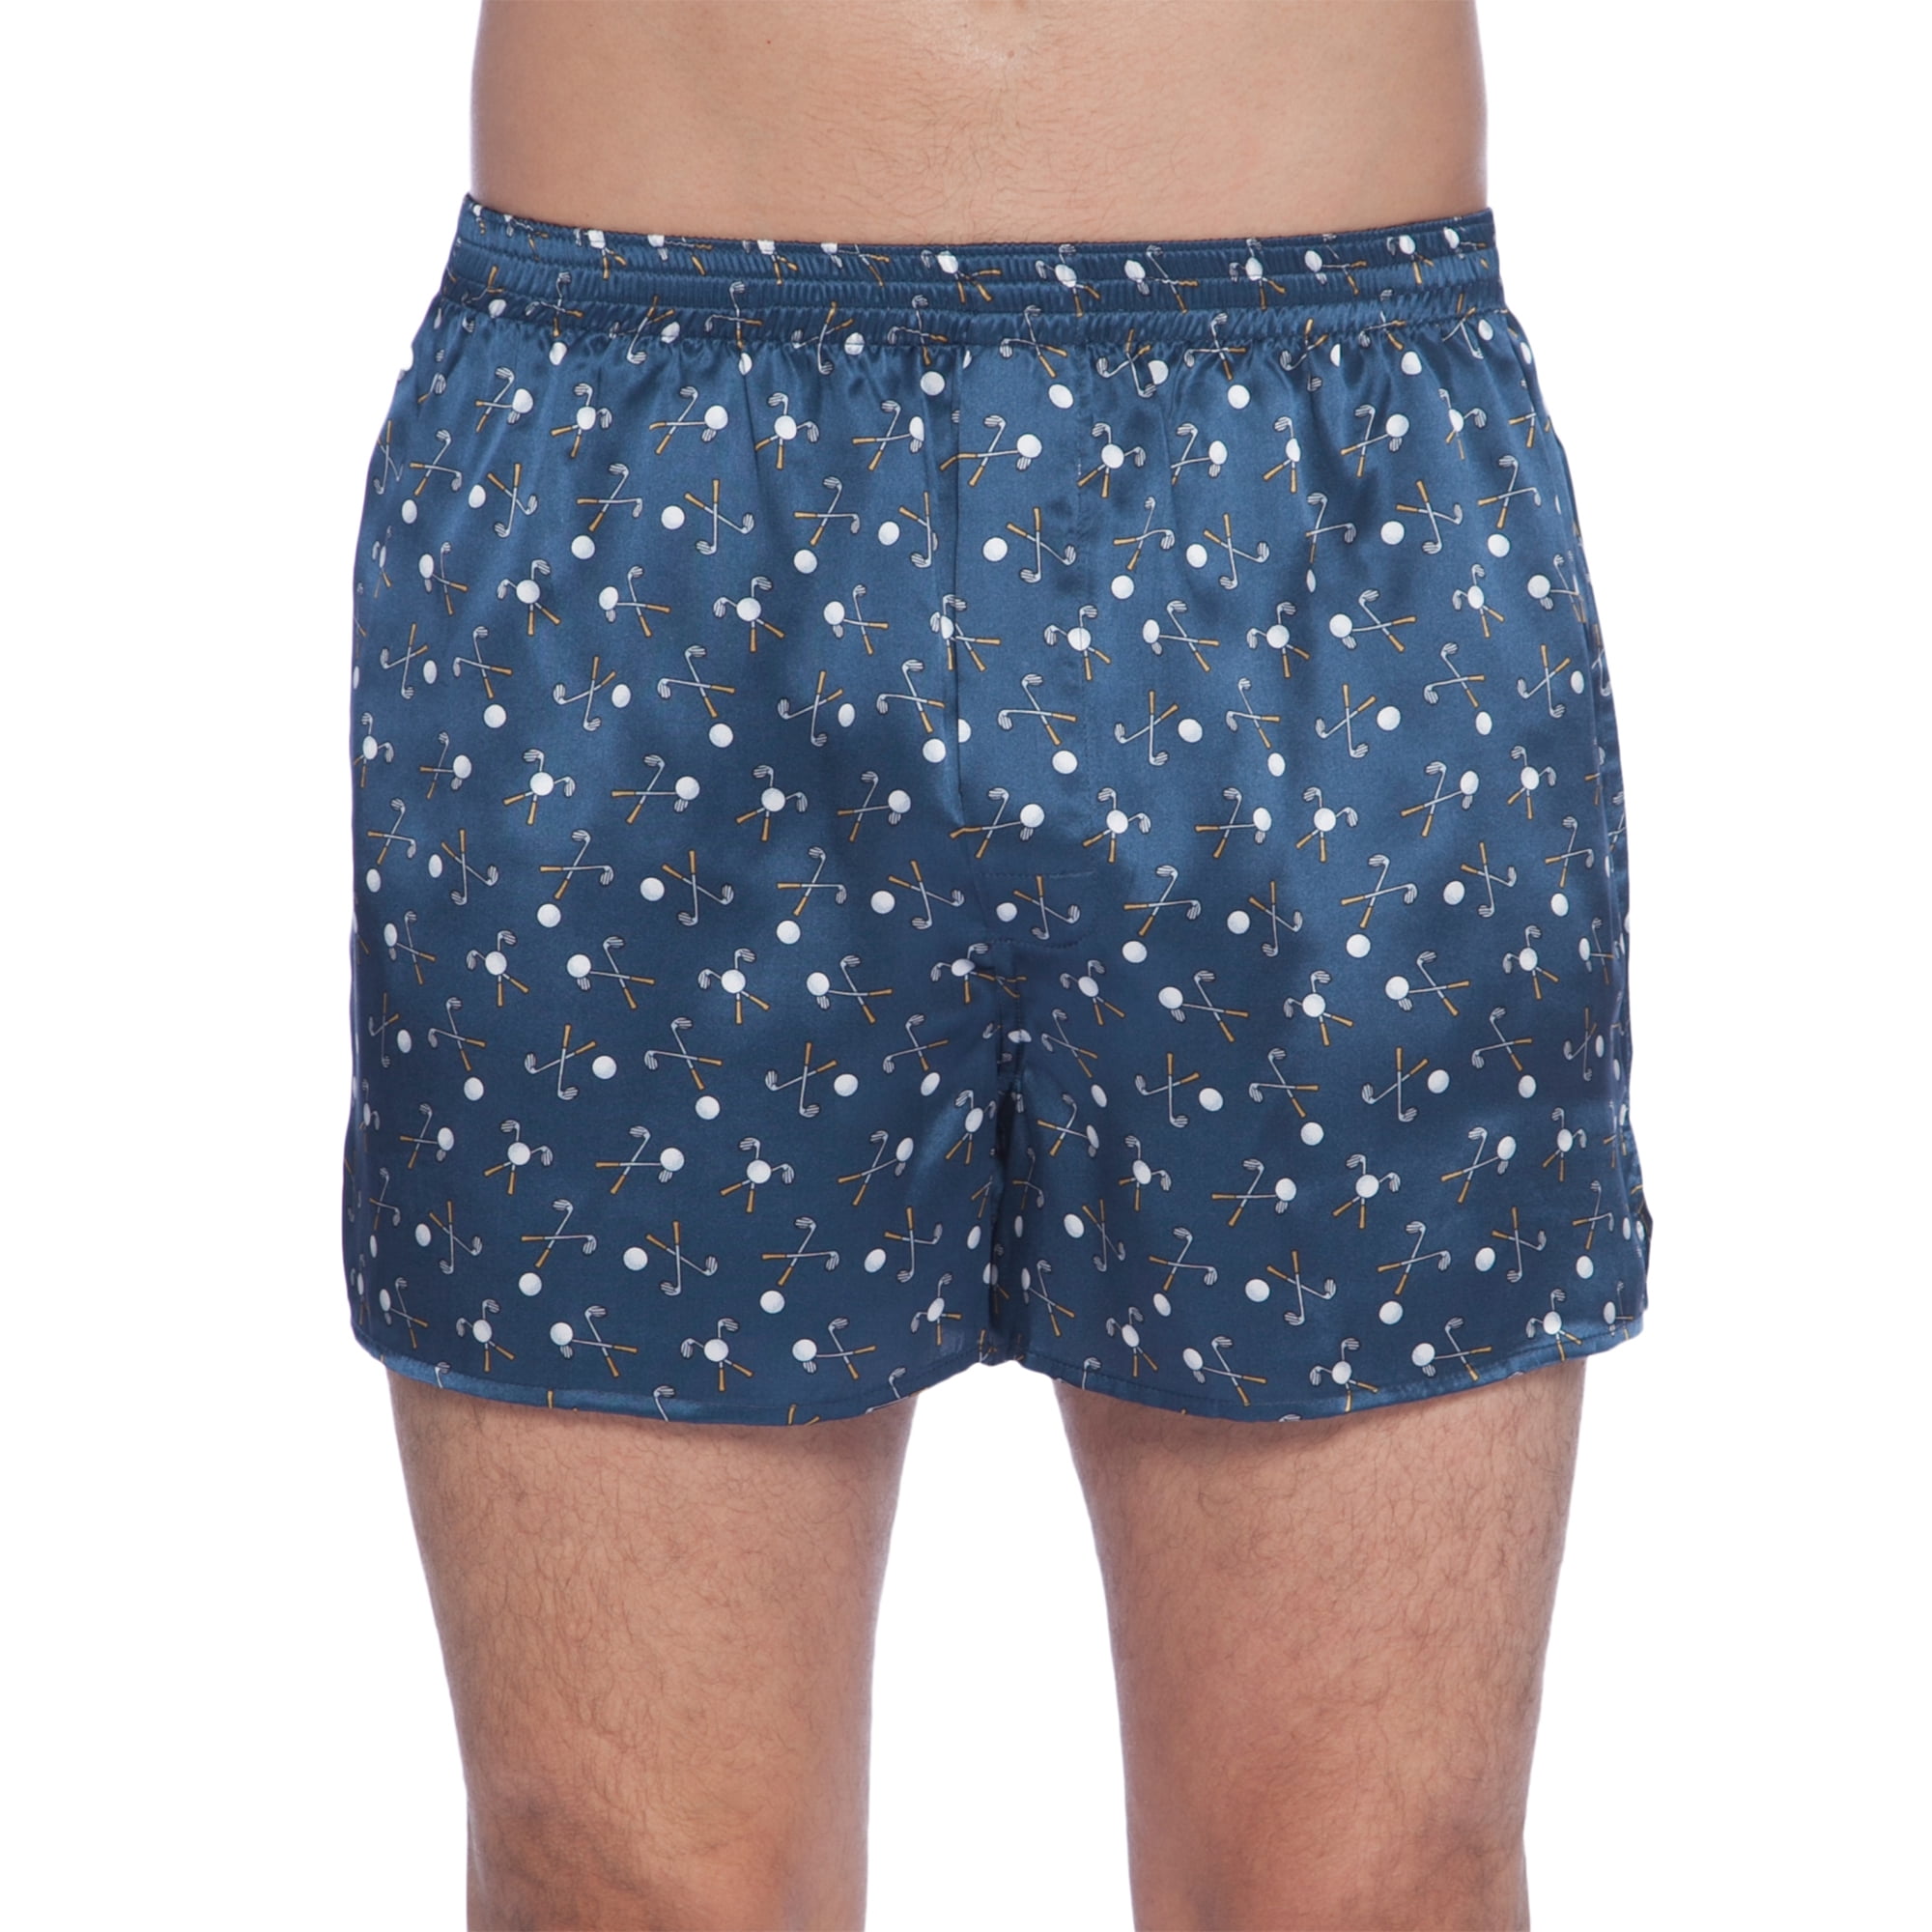 Intimo Men's Silk Golf Graphic Boxer Shorts Underwear - Walmart.com ...